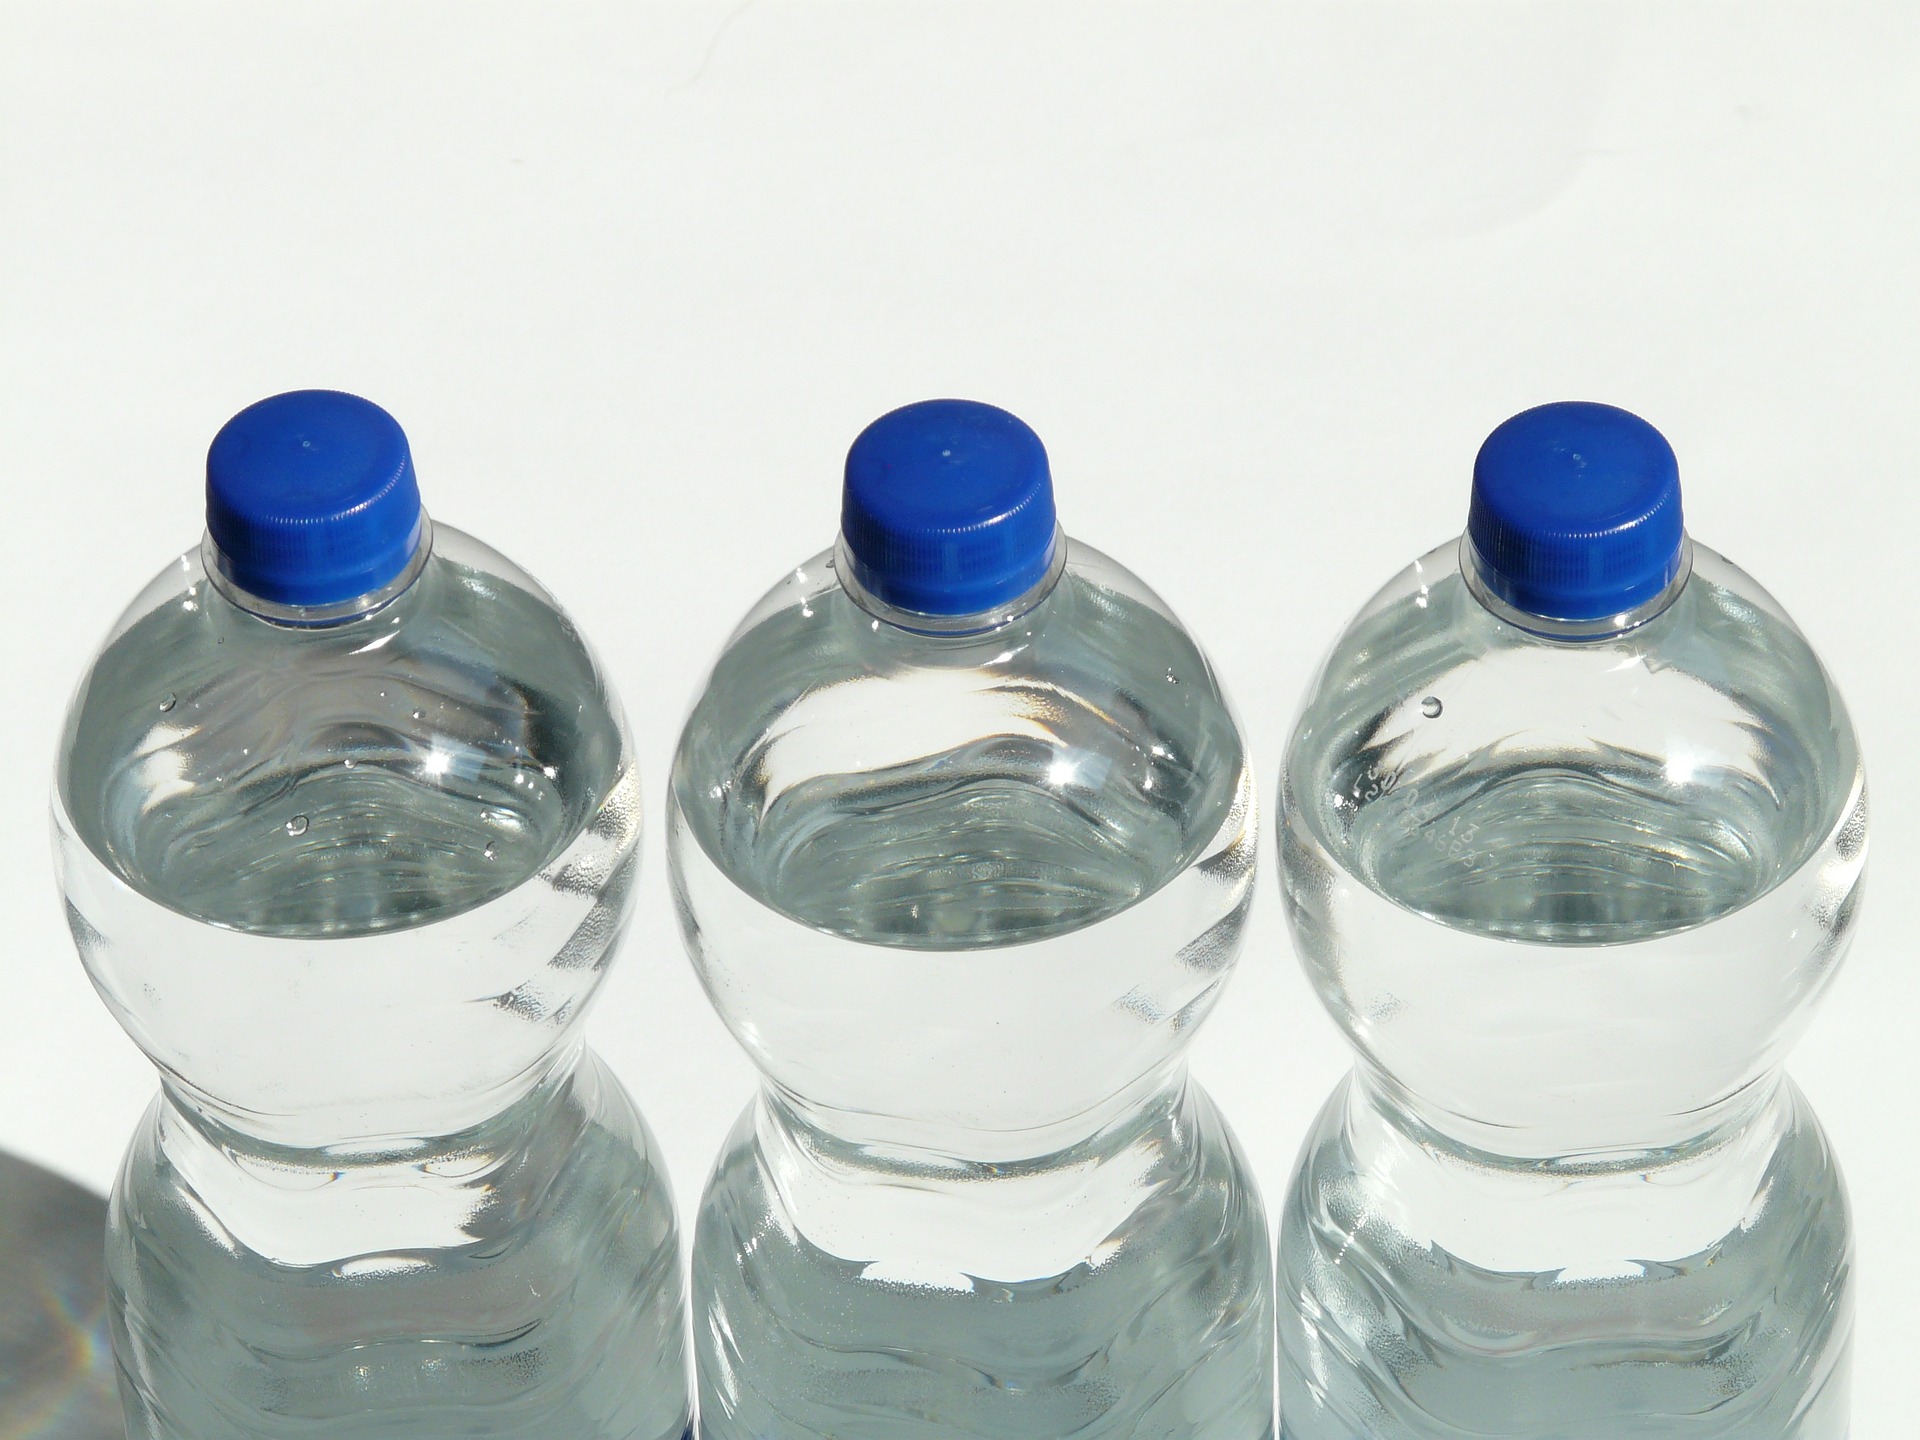 <i>water bottles, Image Source: <a href='https://pixabay.com/en/bottles-plastic-bottle-bottle-60479/'>Pixabay</a></i>